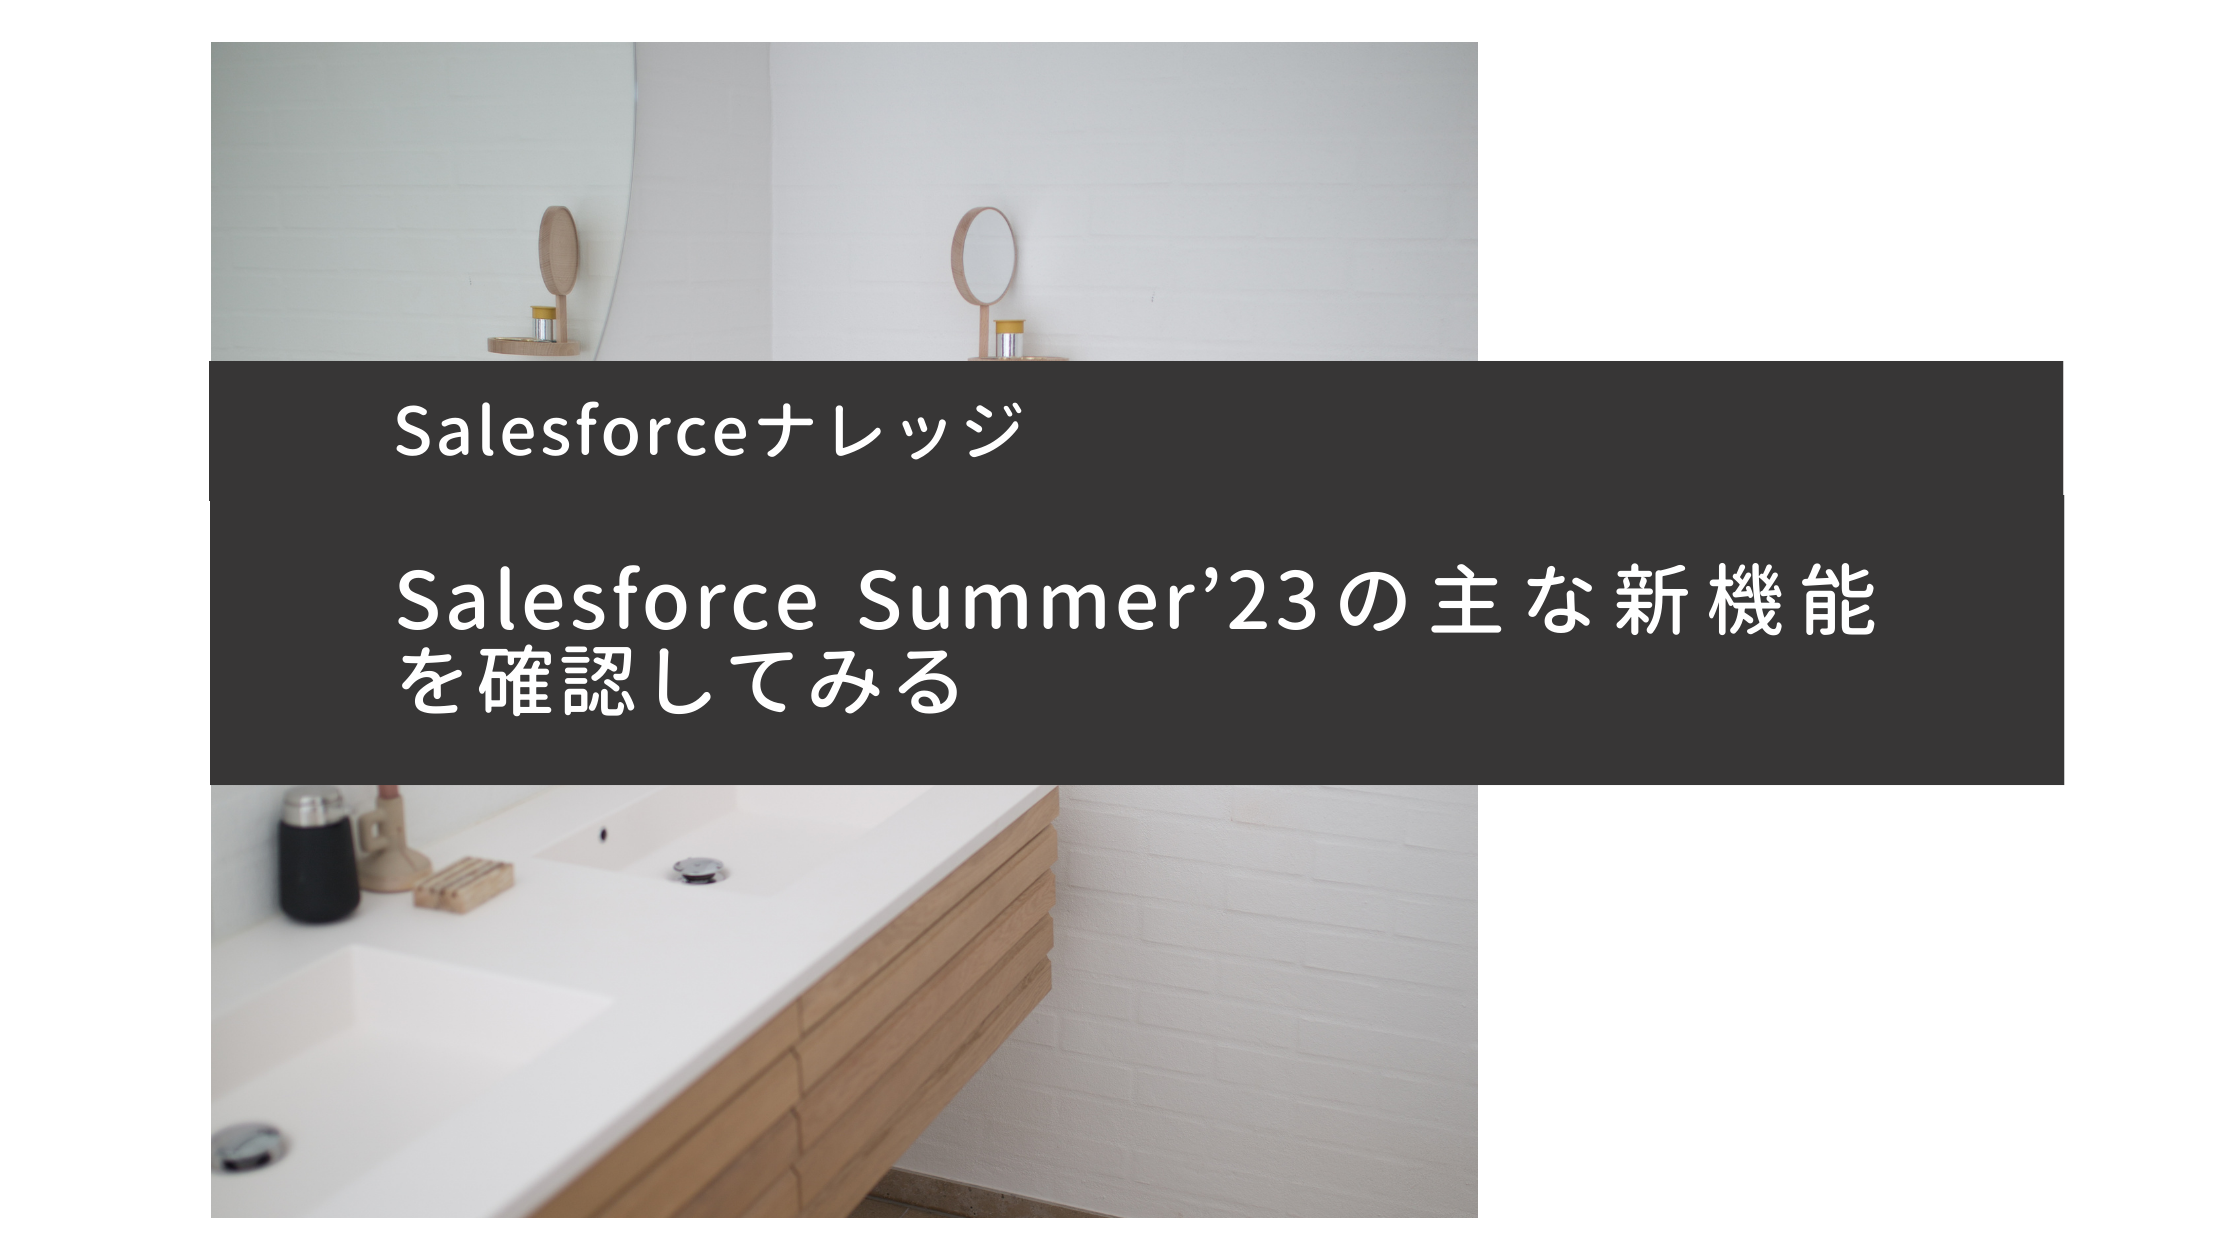 Salesforce Summer'23 Update